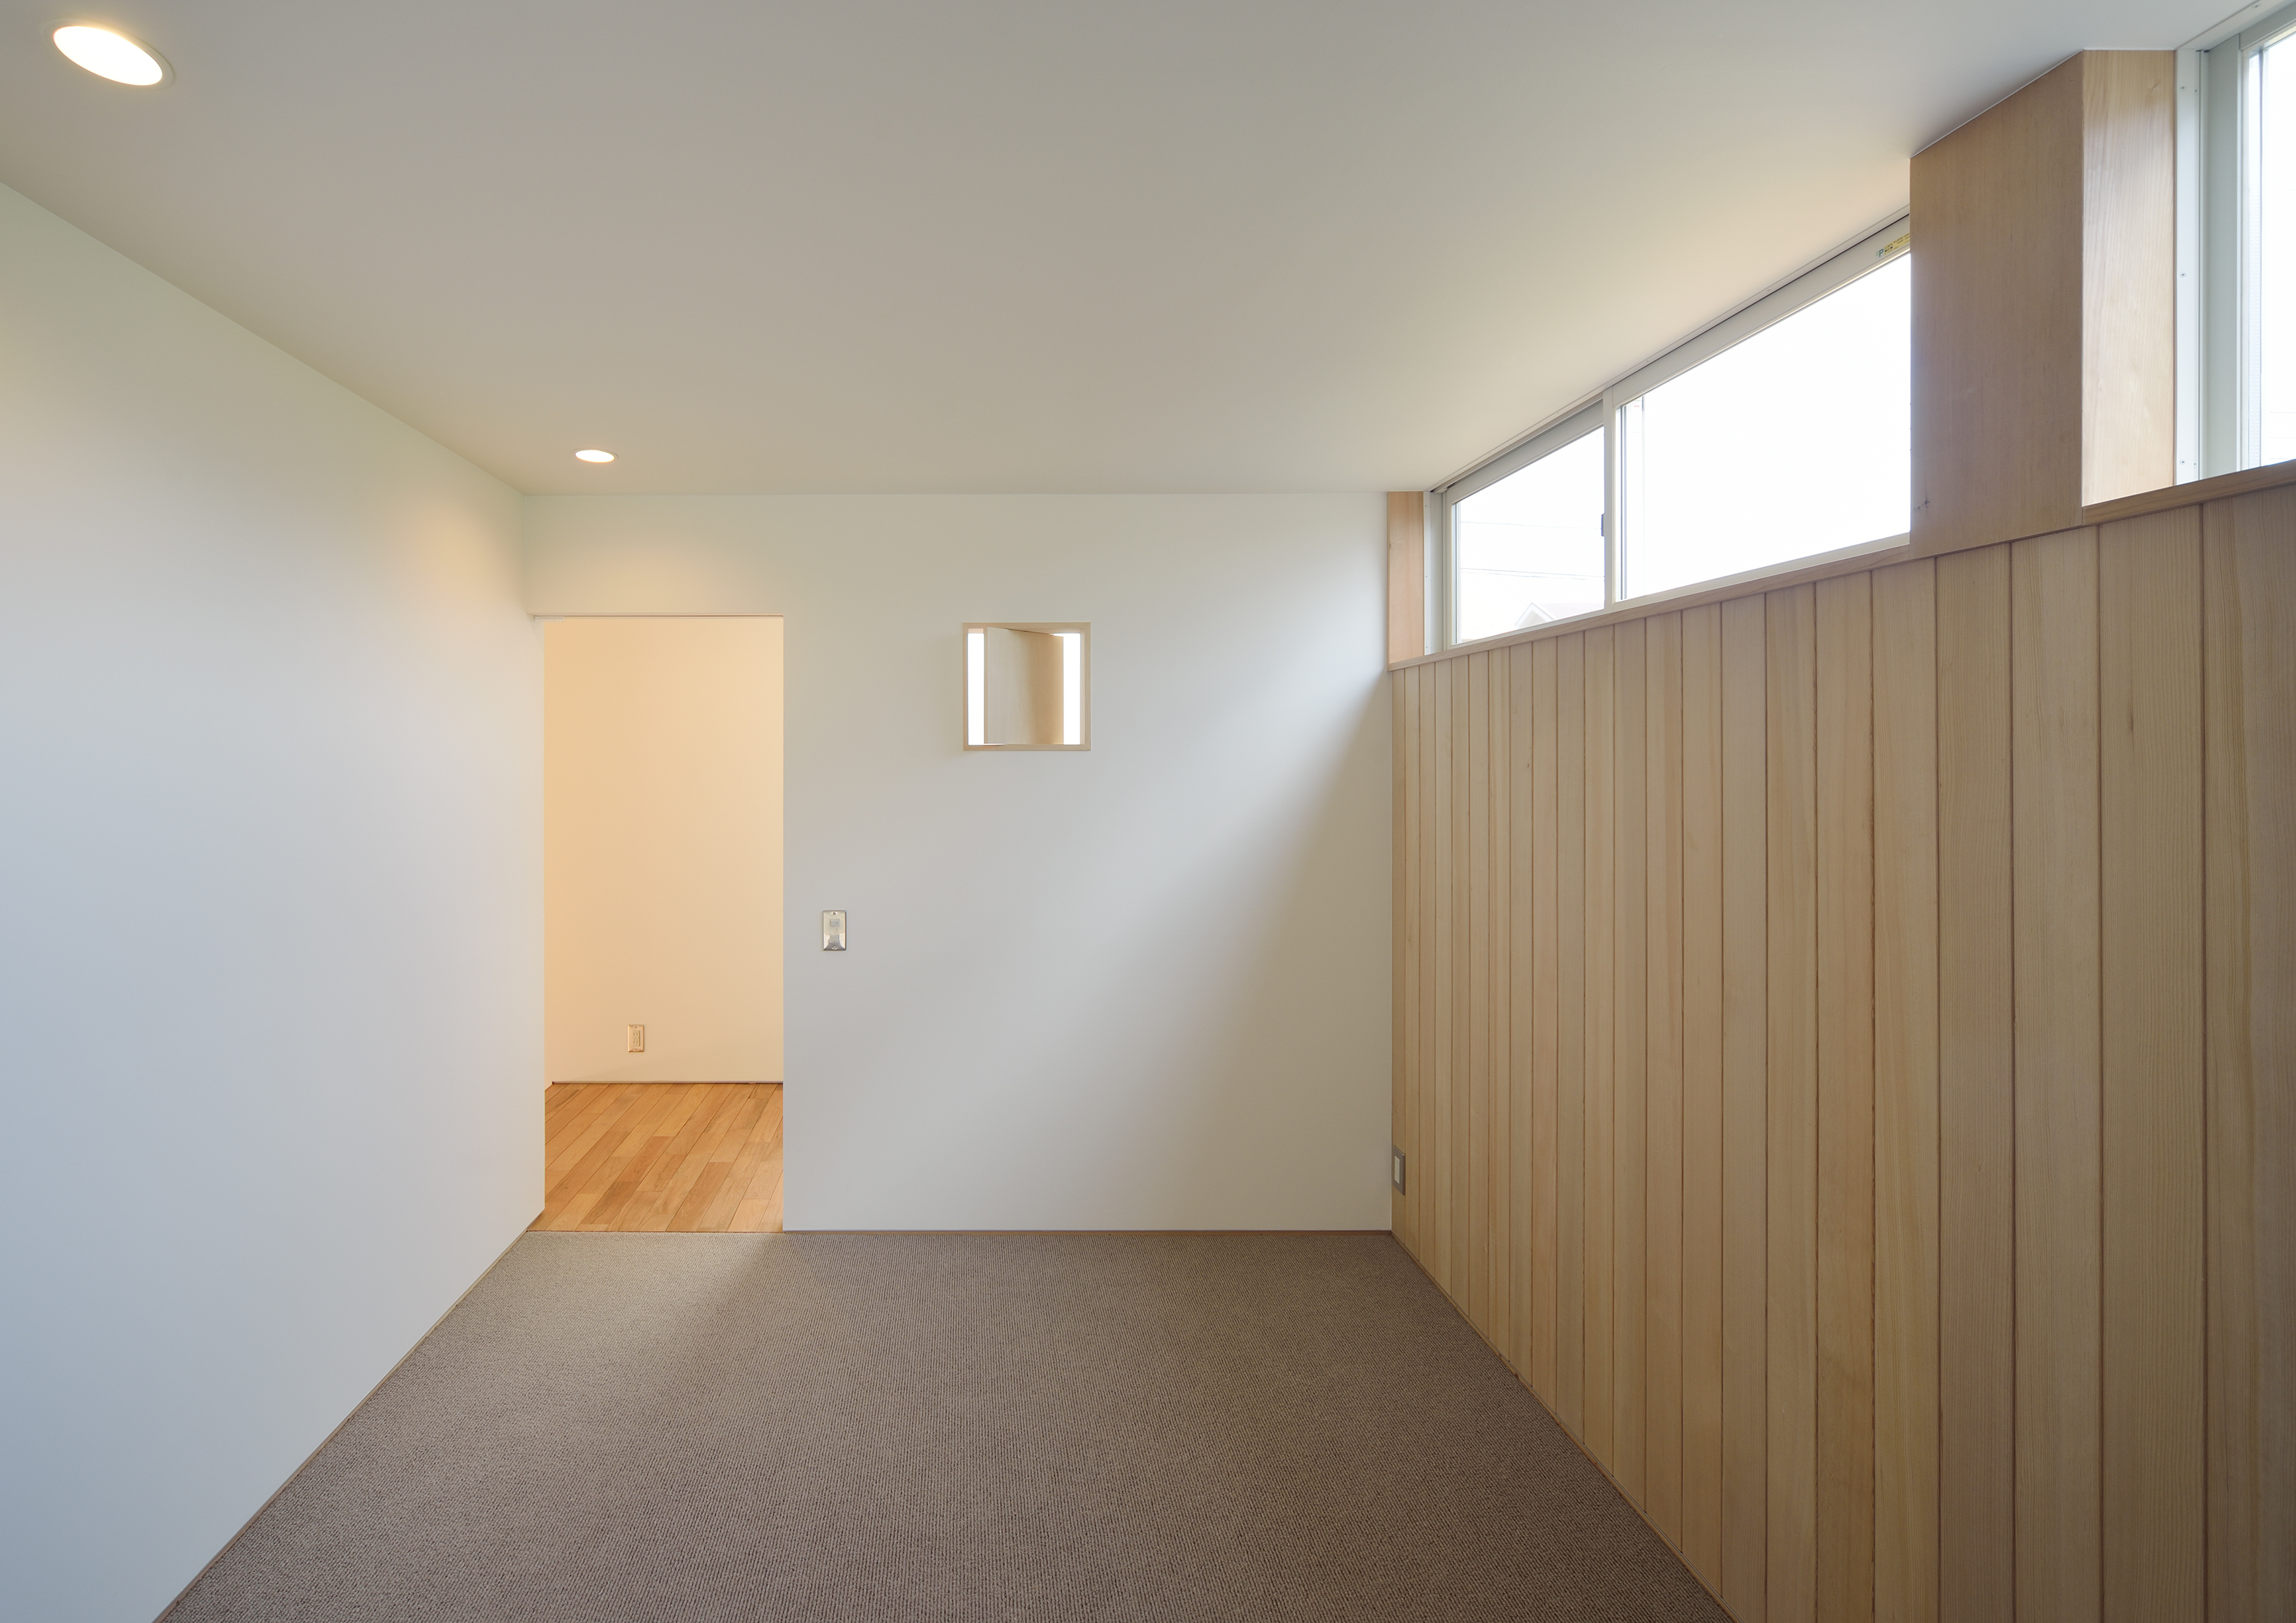 扉をつけずに、部屋の予感を外部に感じるように設計された寝室